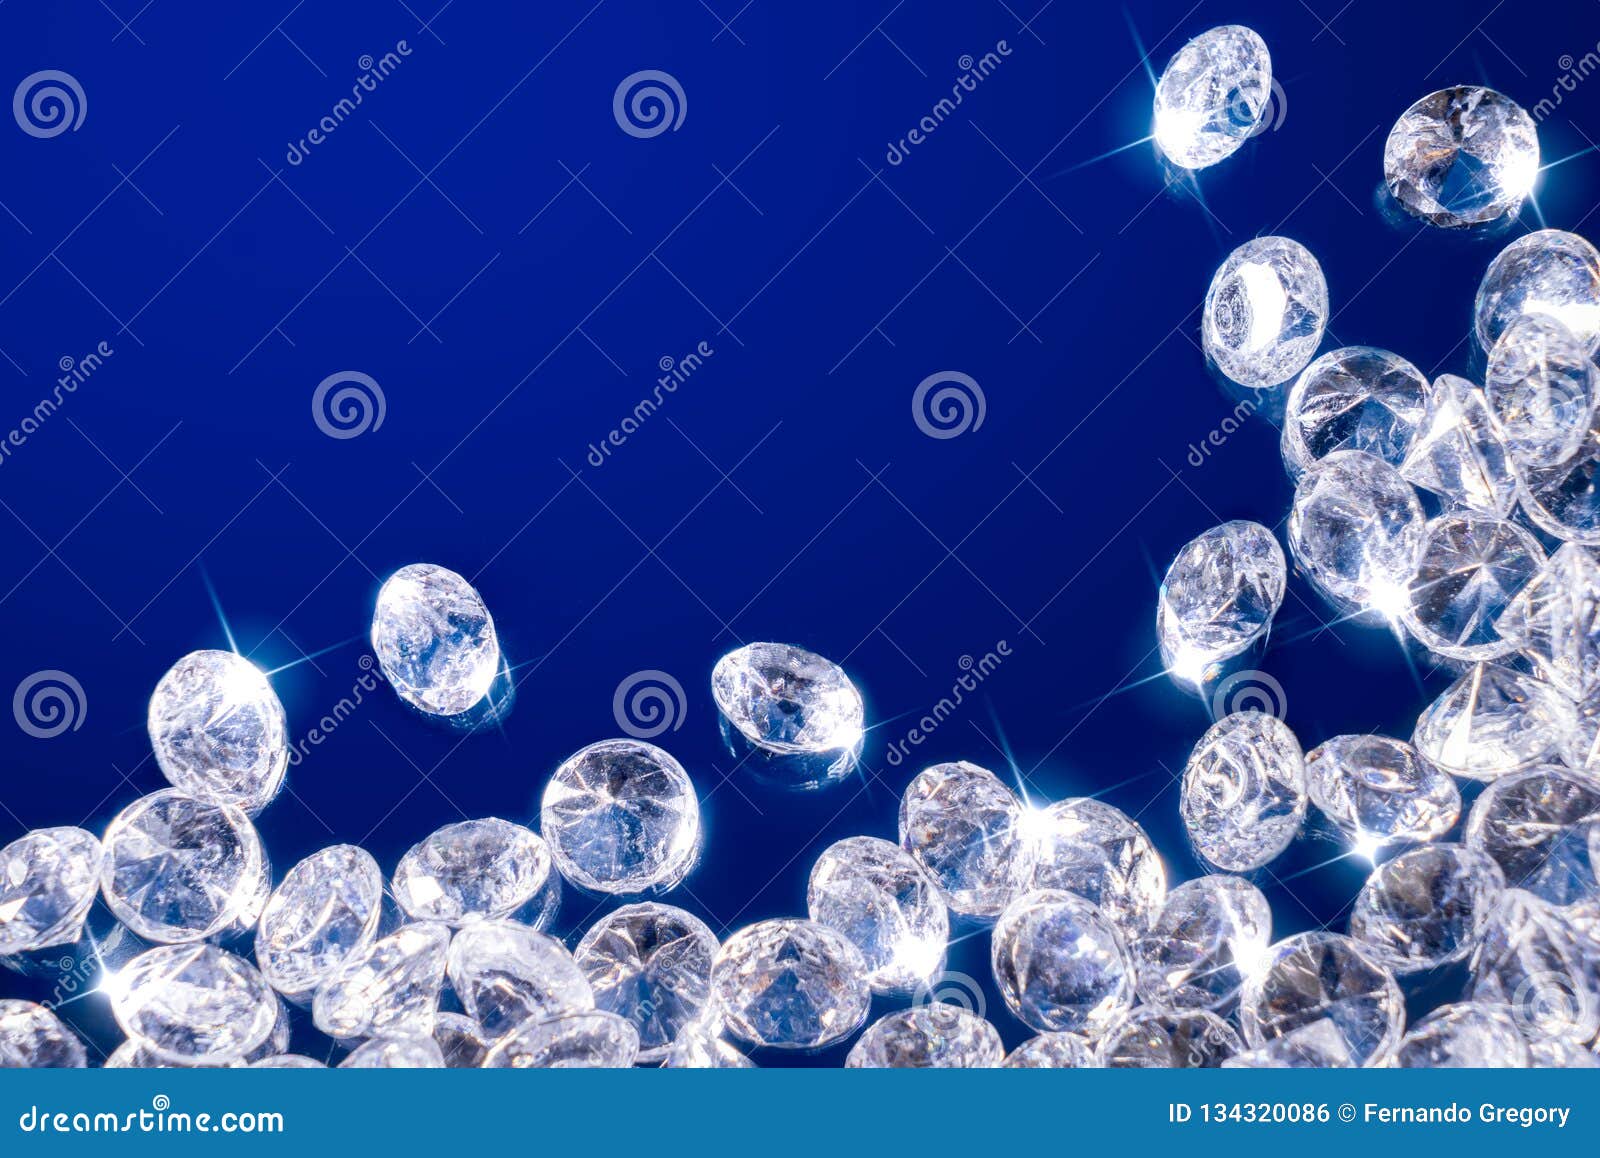 shiny diamonds on a blue background